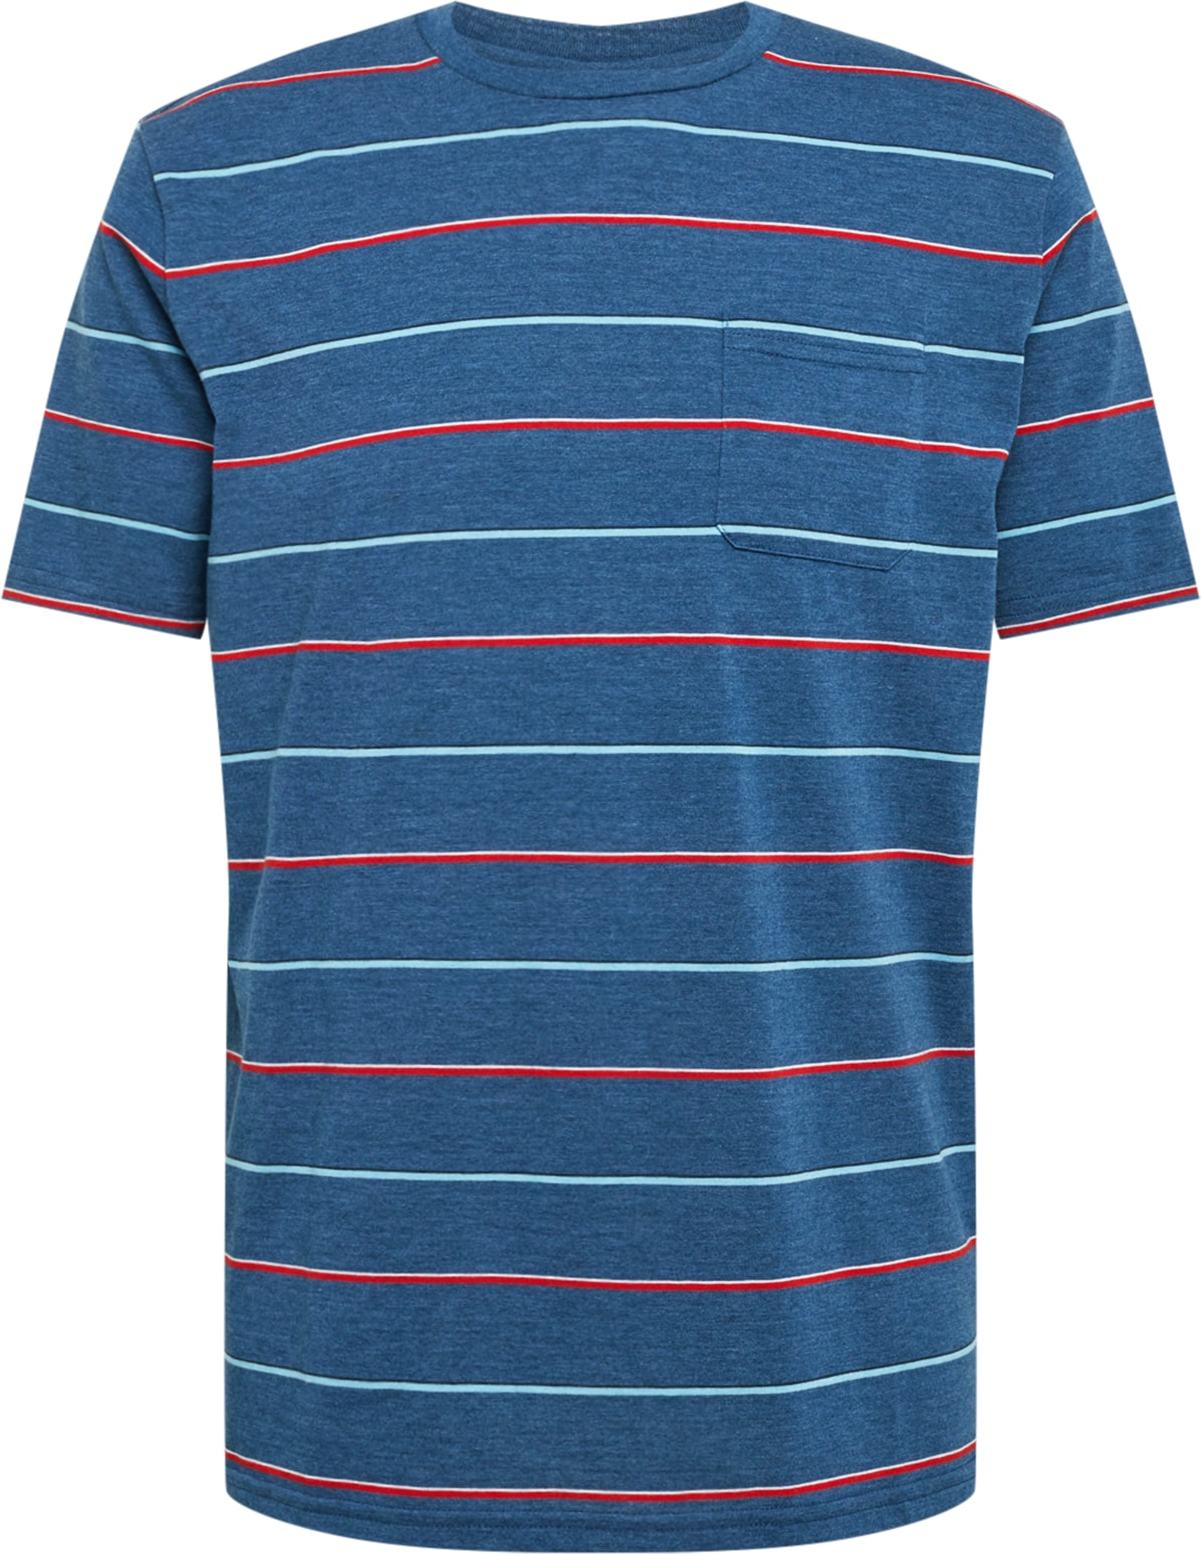 Funkční tričko Oakley světlemodrá / modrý melír / ohnivá červená / bílá